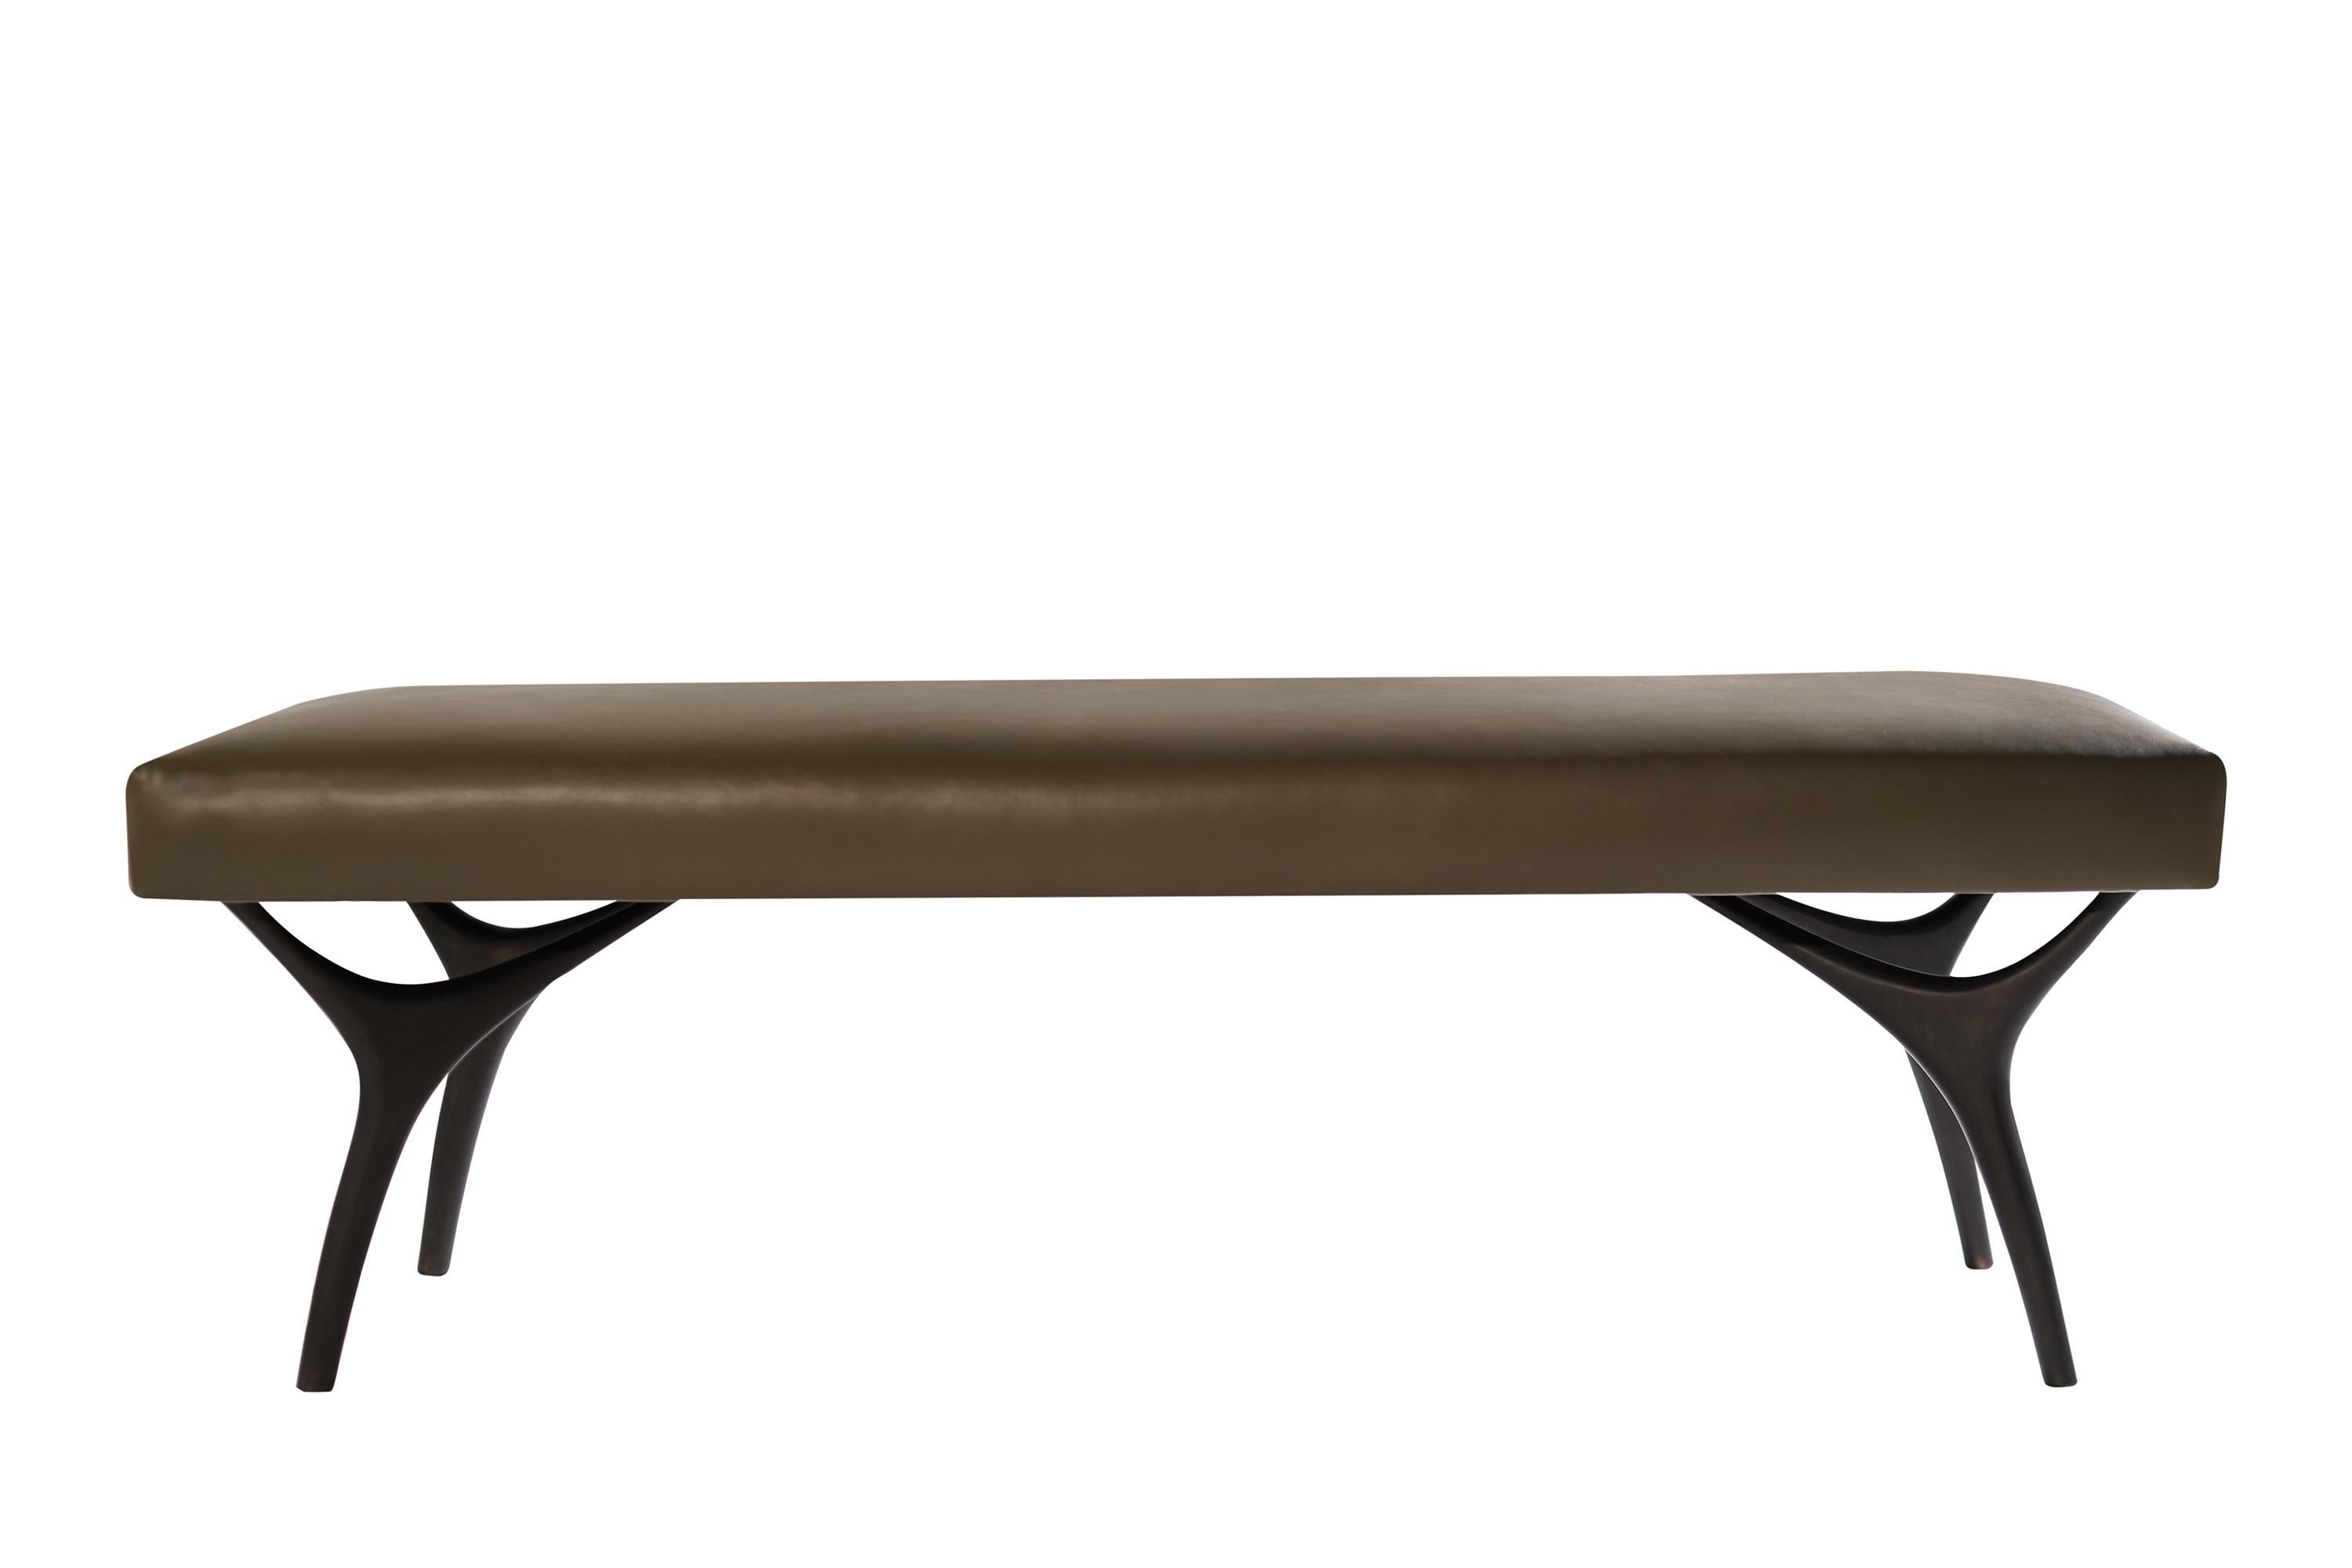 Die Crescent Bench schwebt mühelos auf bronzenen Fingerspitzen aus Messing. Inspiriert von Visionären des 20. Jahrhunderts wie Gio Ponti und Vladimir Kagan, bietet diese Bank eine einzigartige Perspektive. Das weiche Sitzkissen ist mit olivgrünem